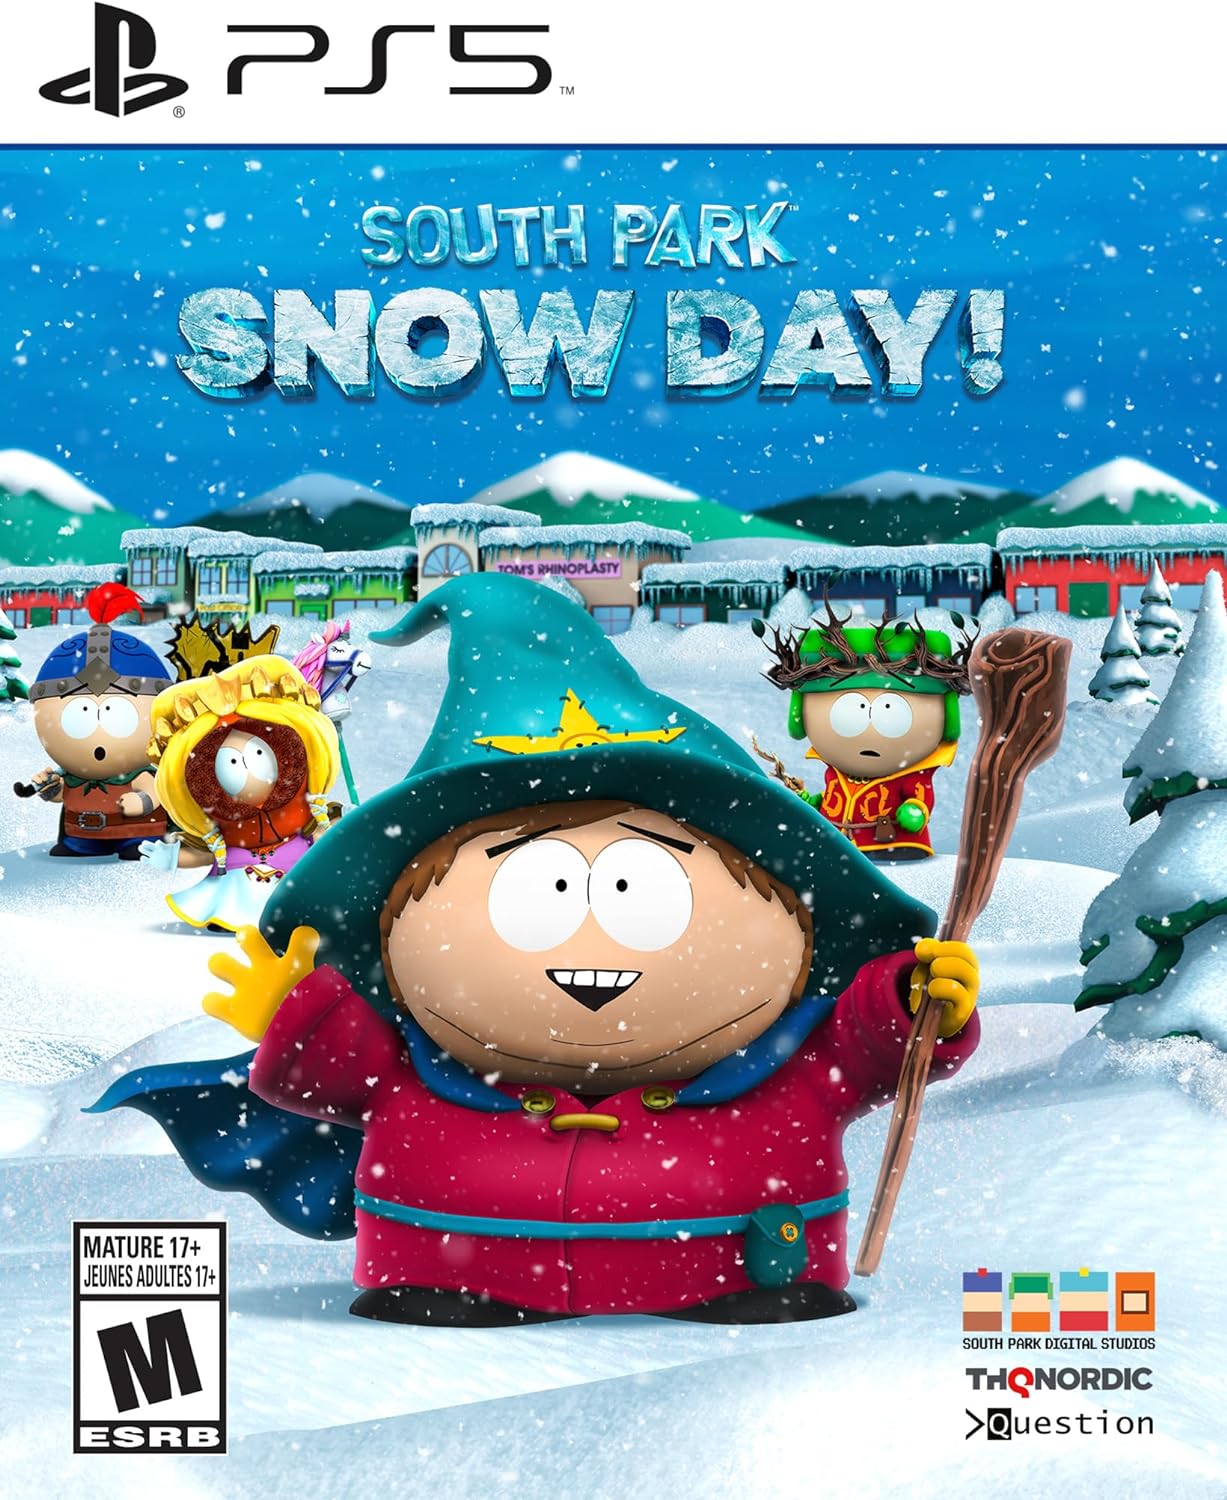 Игра South Park: Snow Day! (PlayStation 5, полностью на иностранном языке)